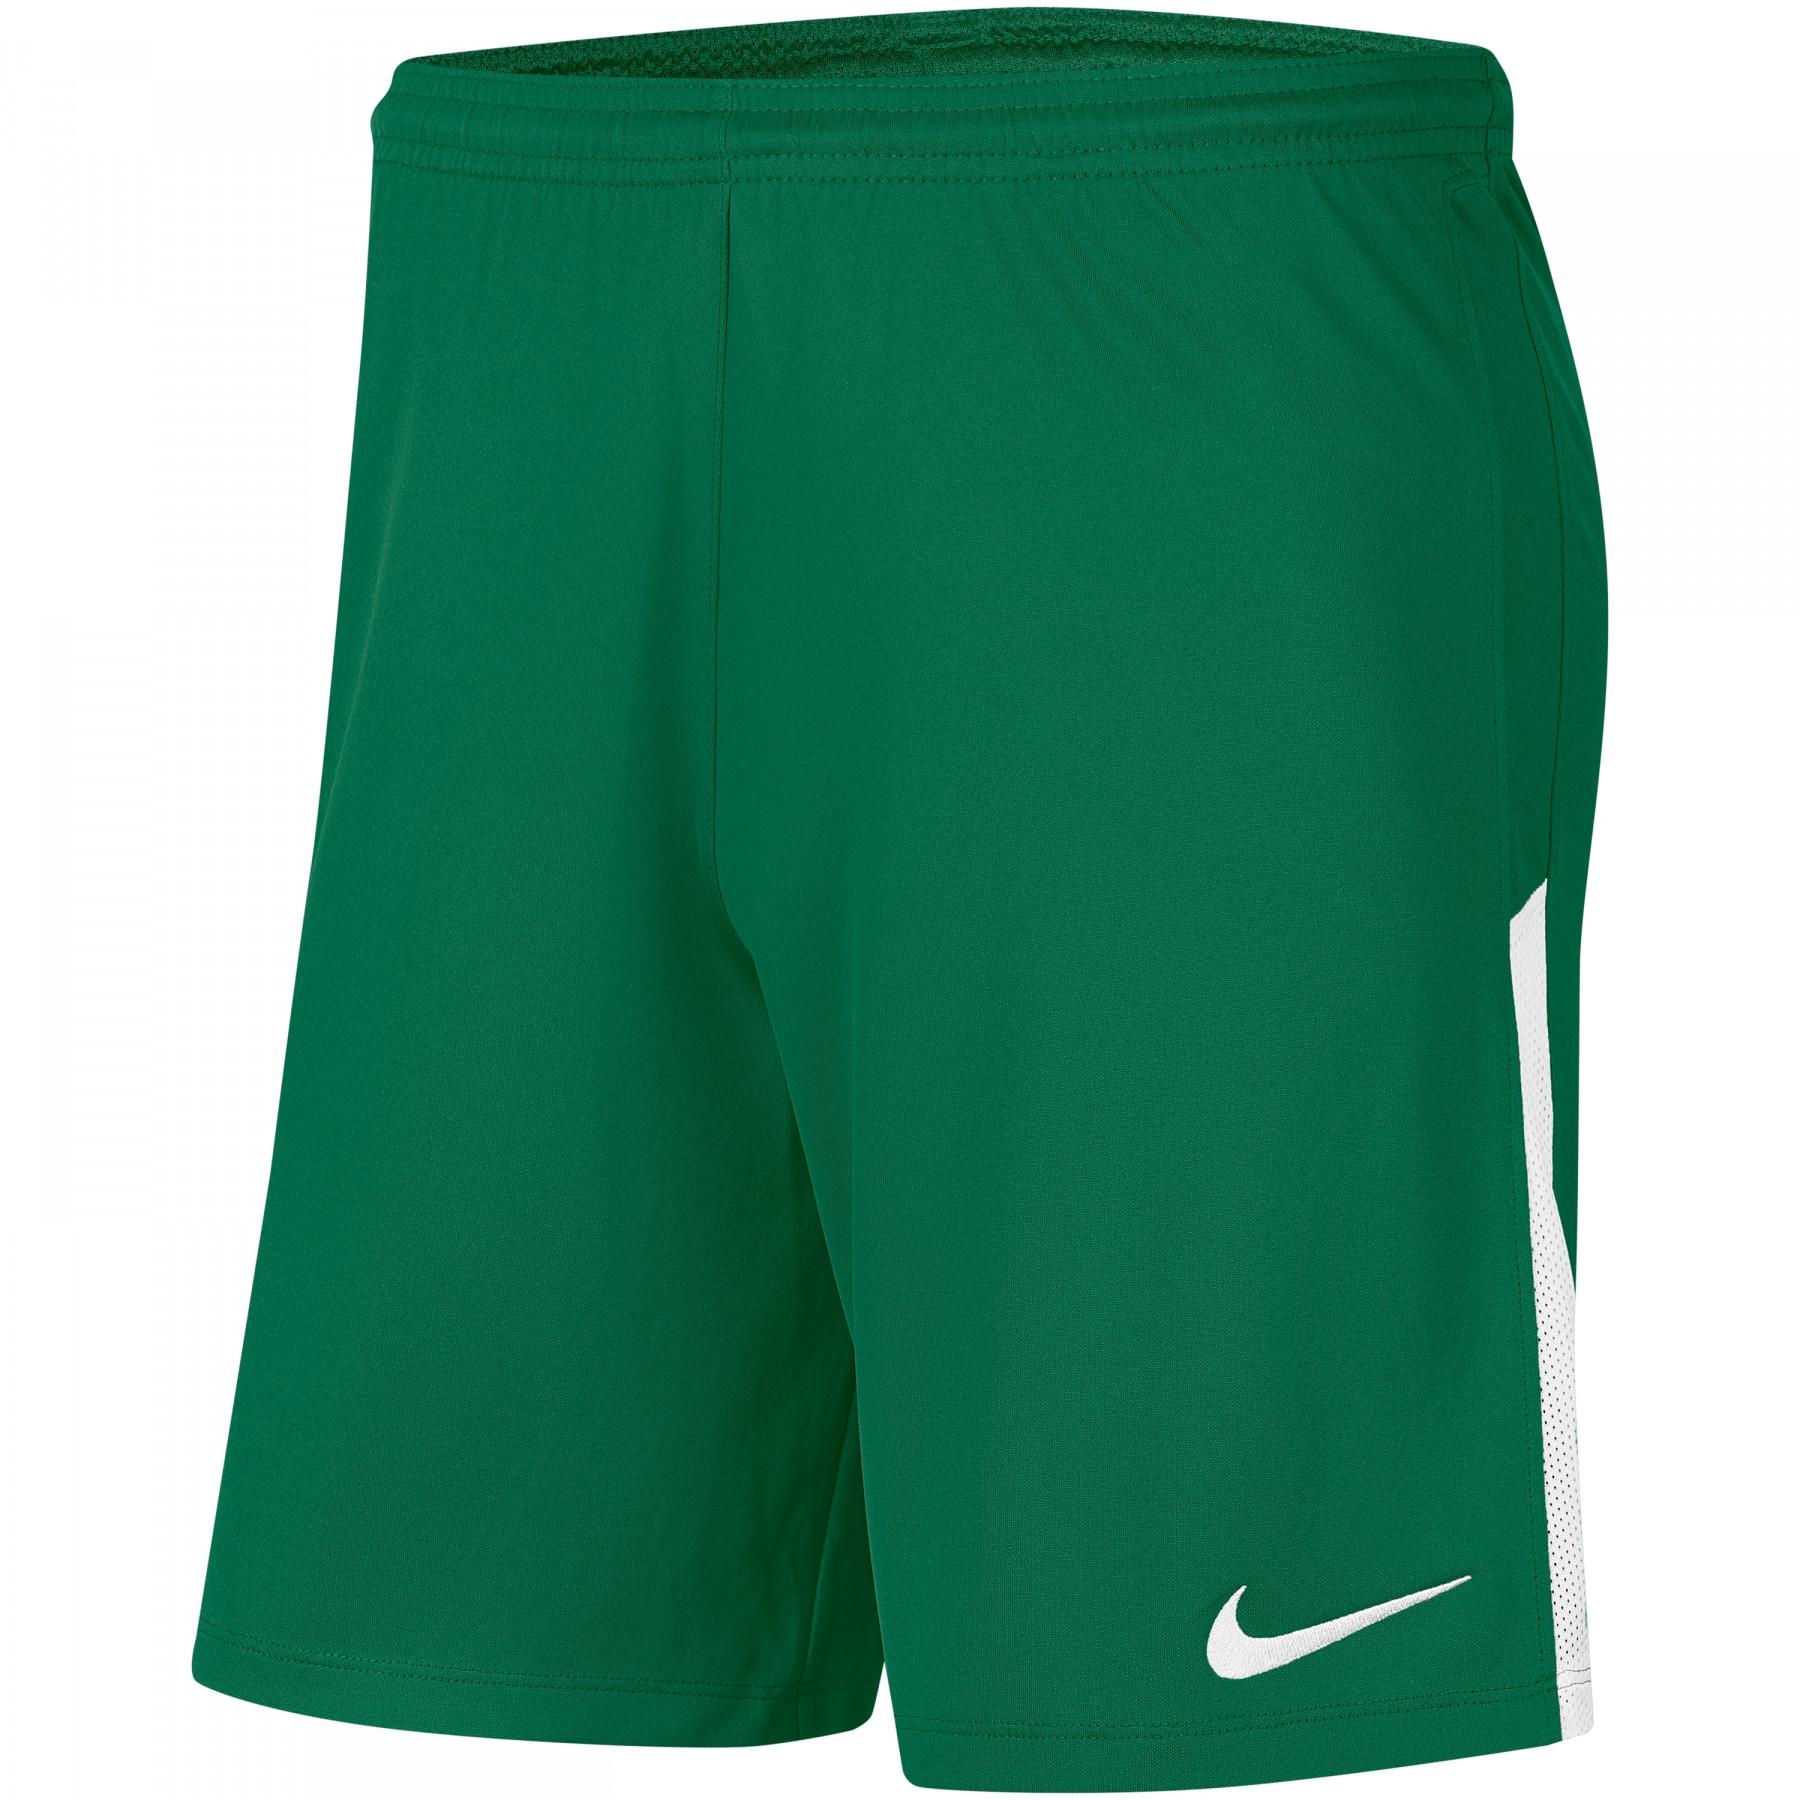 Kinder shorts Nike Dri-FIT League Knit II